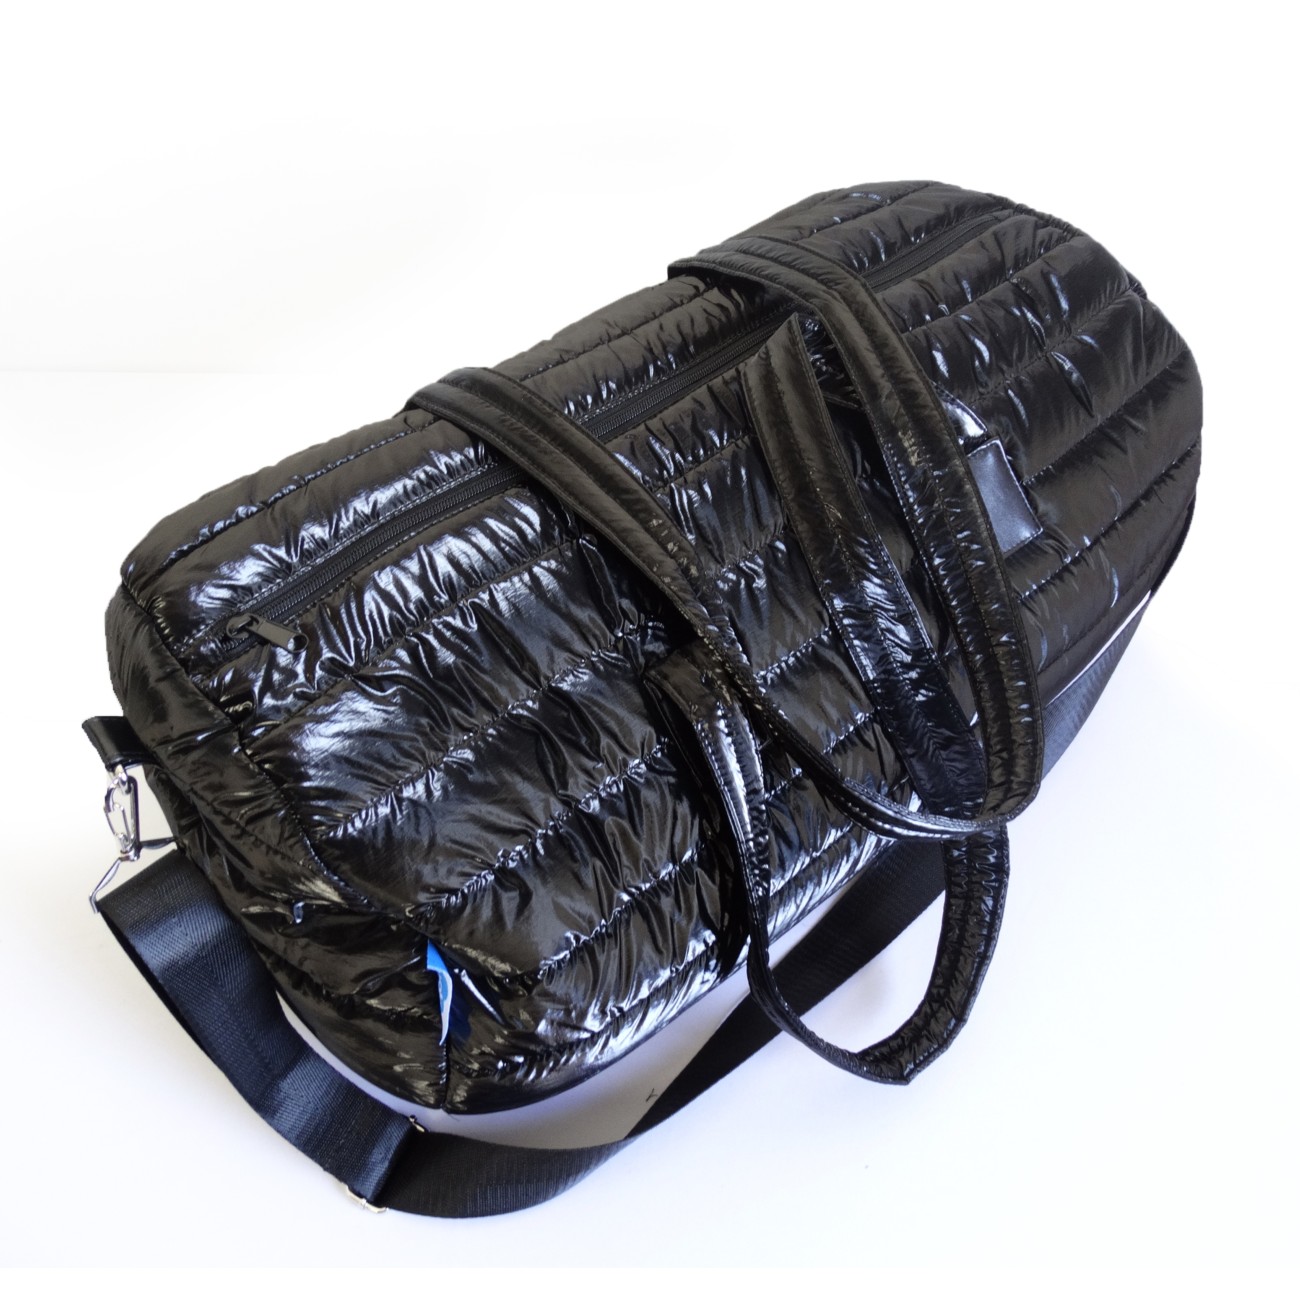 Travel bag Apolo Black 2